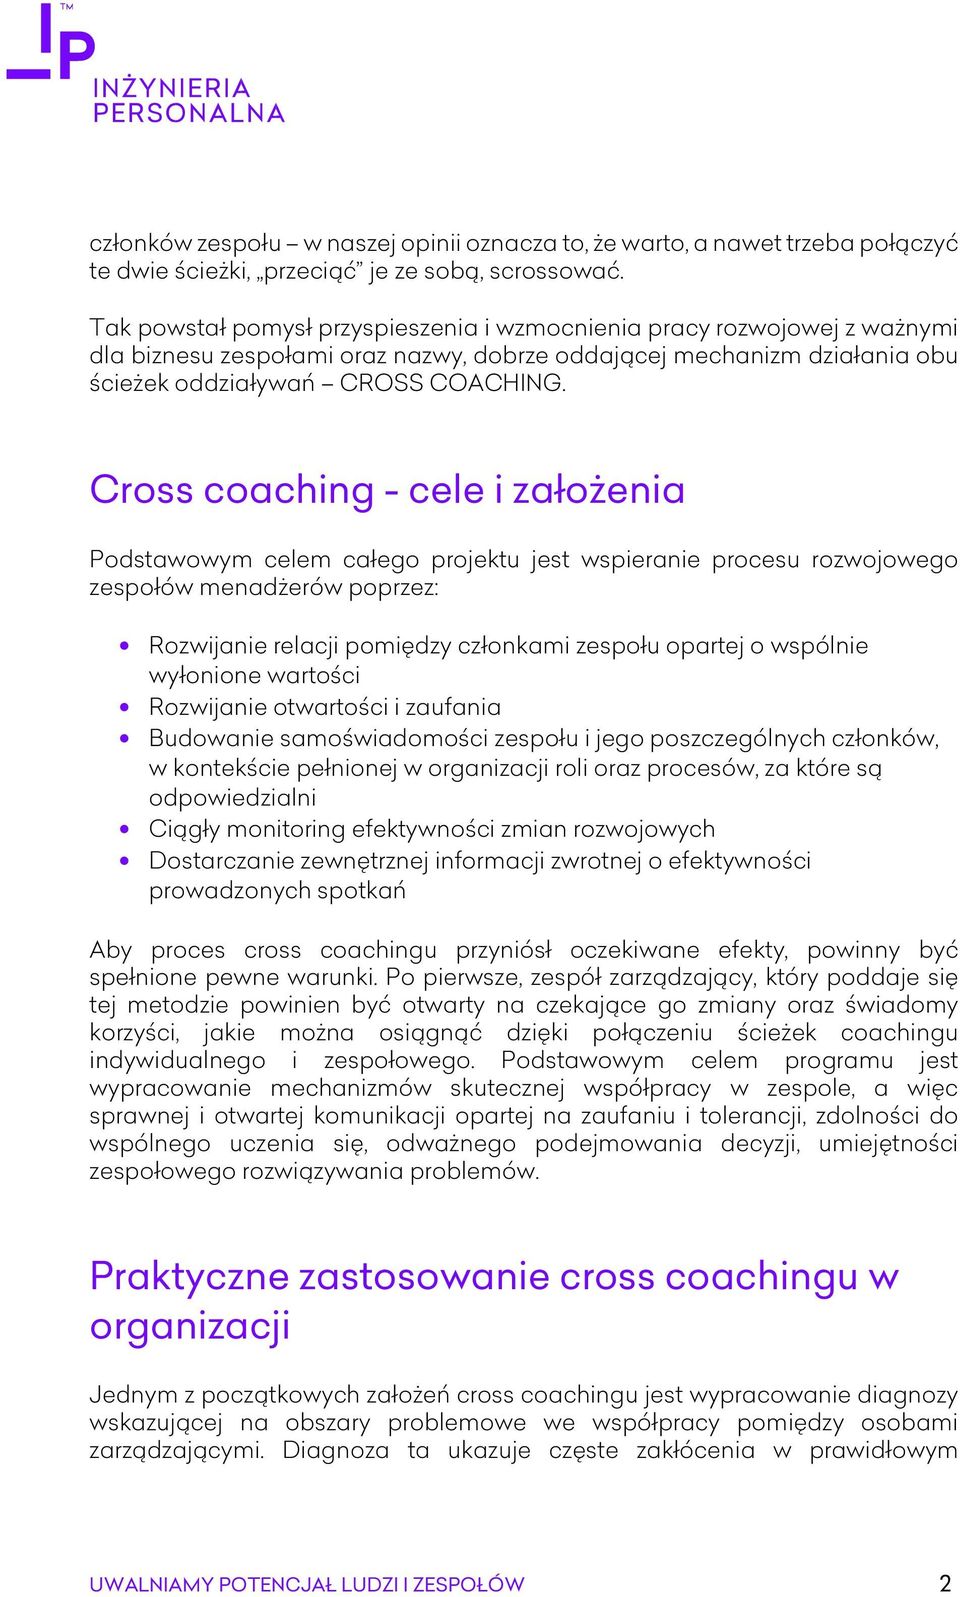 Cross coaching - cele i założenia Podstawowym celem całego projektu jest wspieranie procesu rozwojowego zespołów menadżerów poprzez: Rozwijanie relacji pomiędzy członkami zespołu opartej o wspólnie